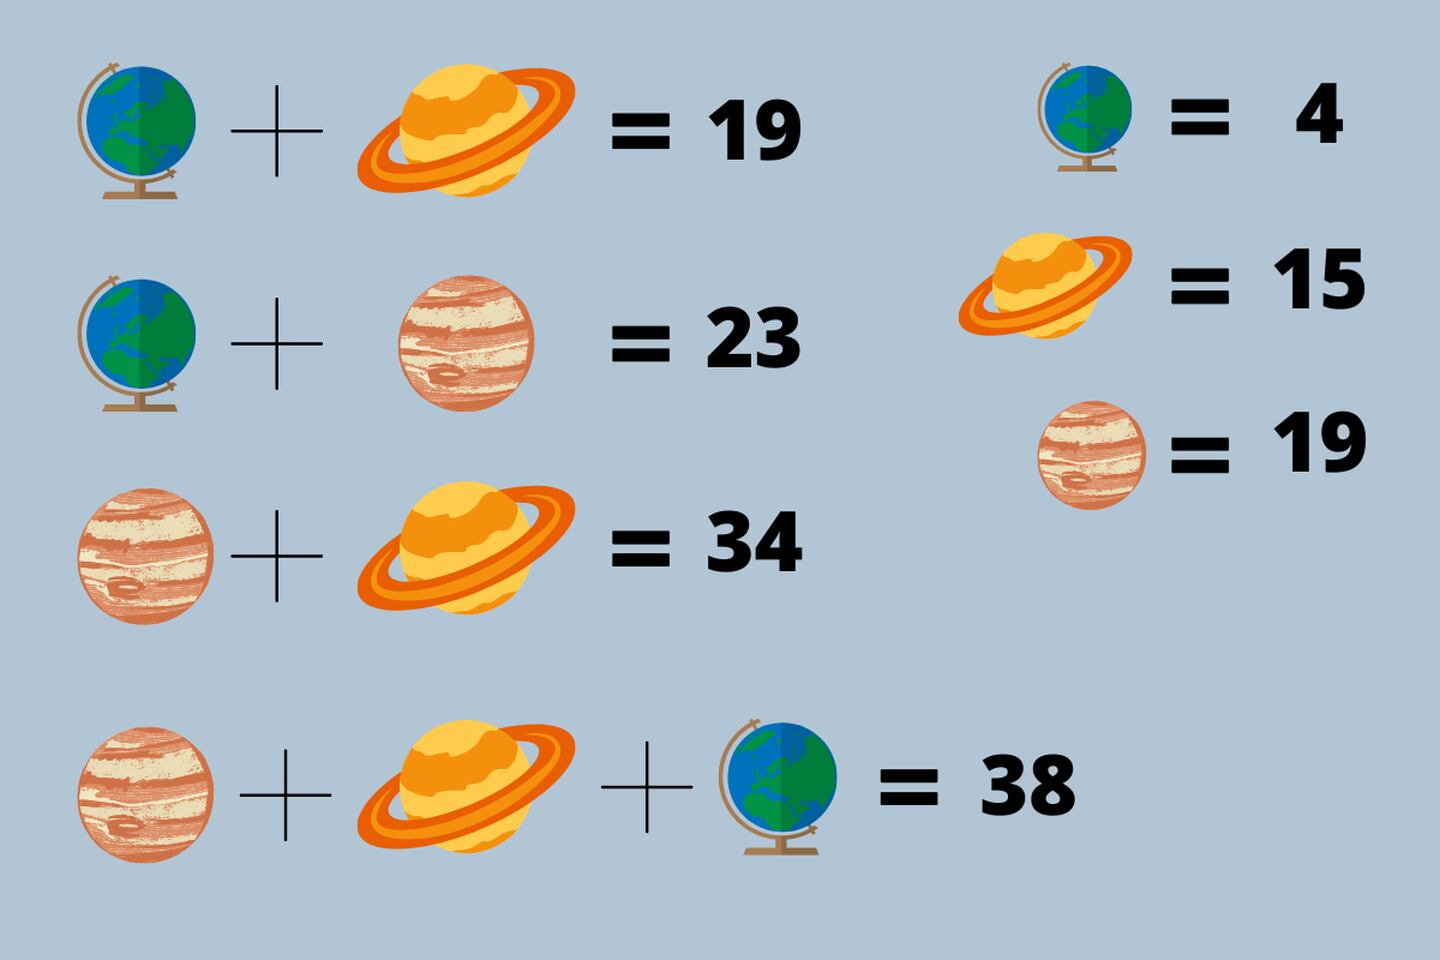 resultado de los planetas que se suman y tienen valores diferentes.